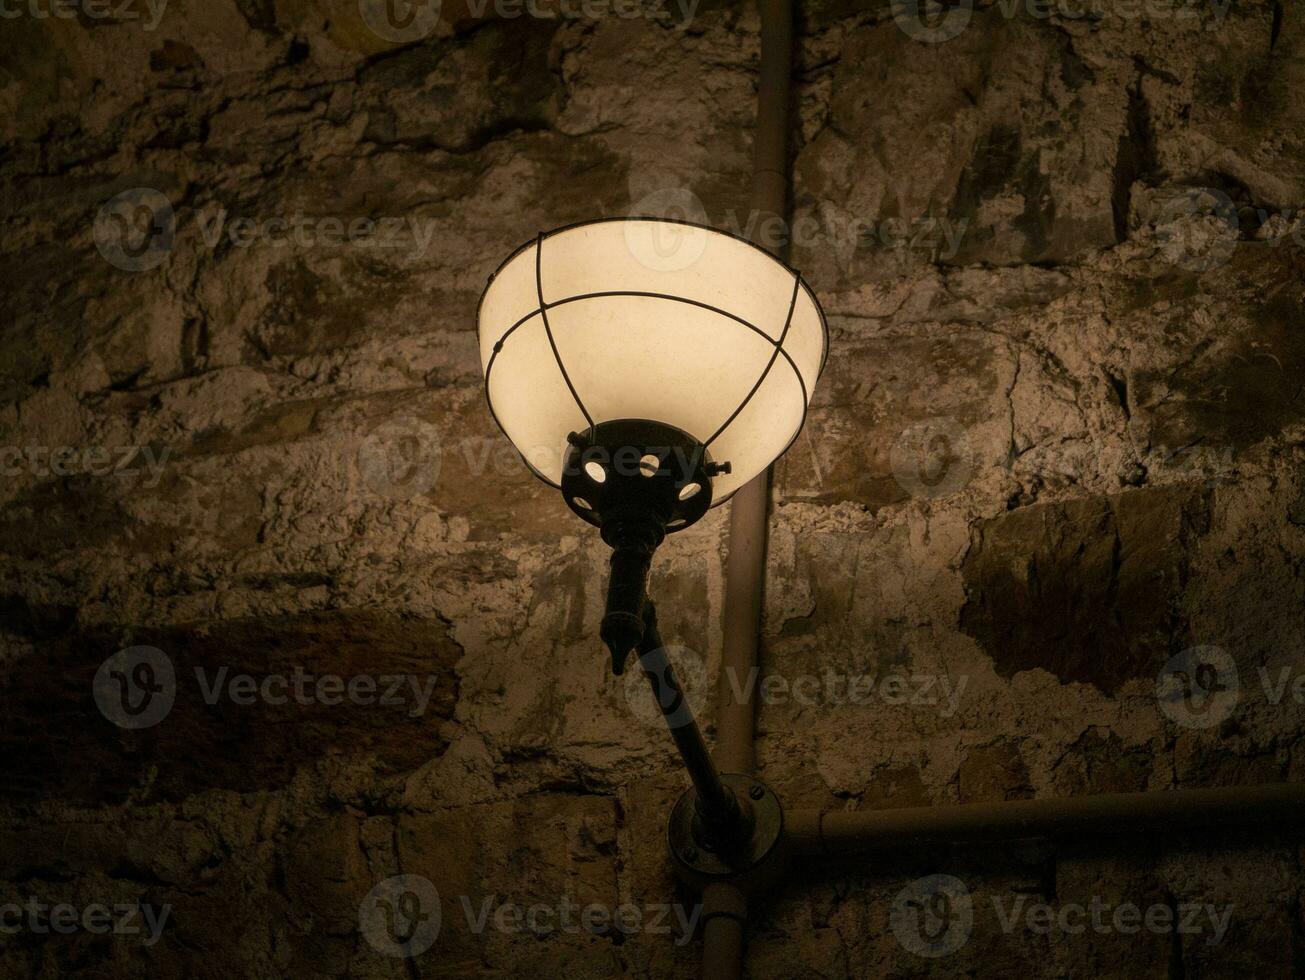 gammal gammal lampa på de vägg av en fängelse bakgrund, dyster ljus foto